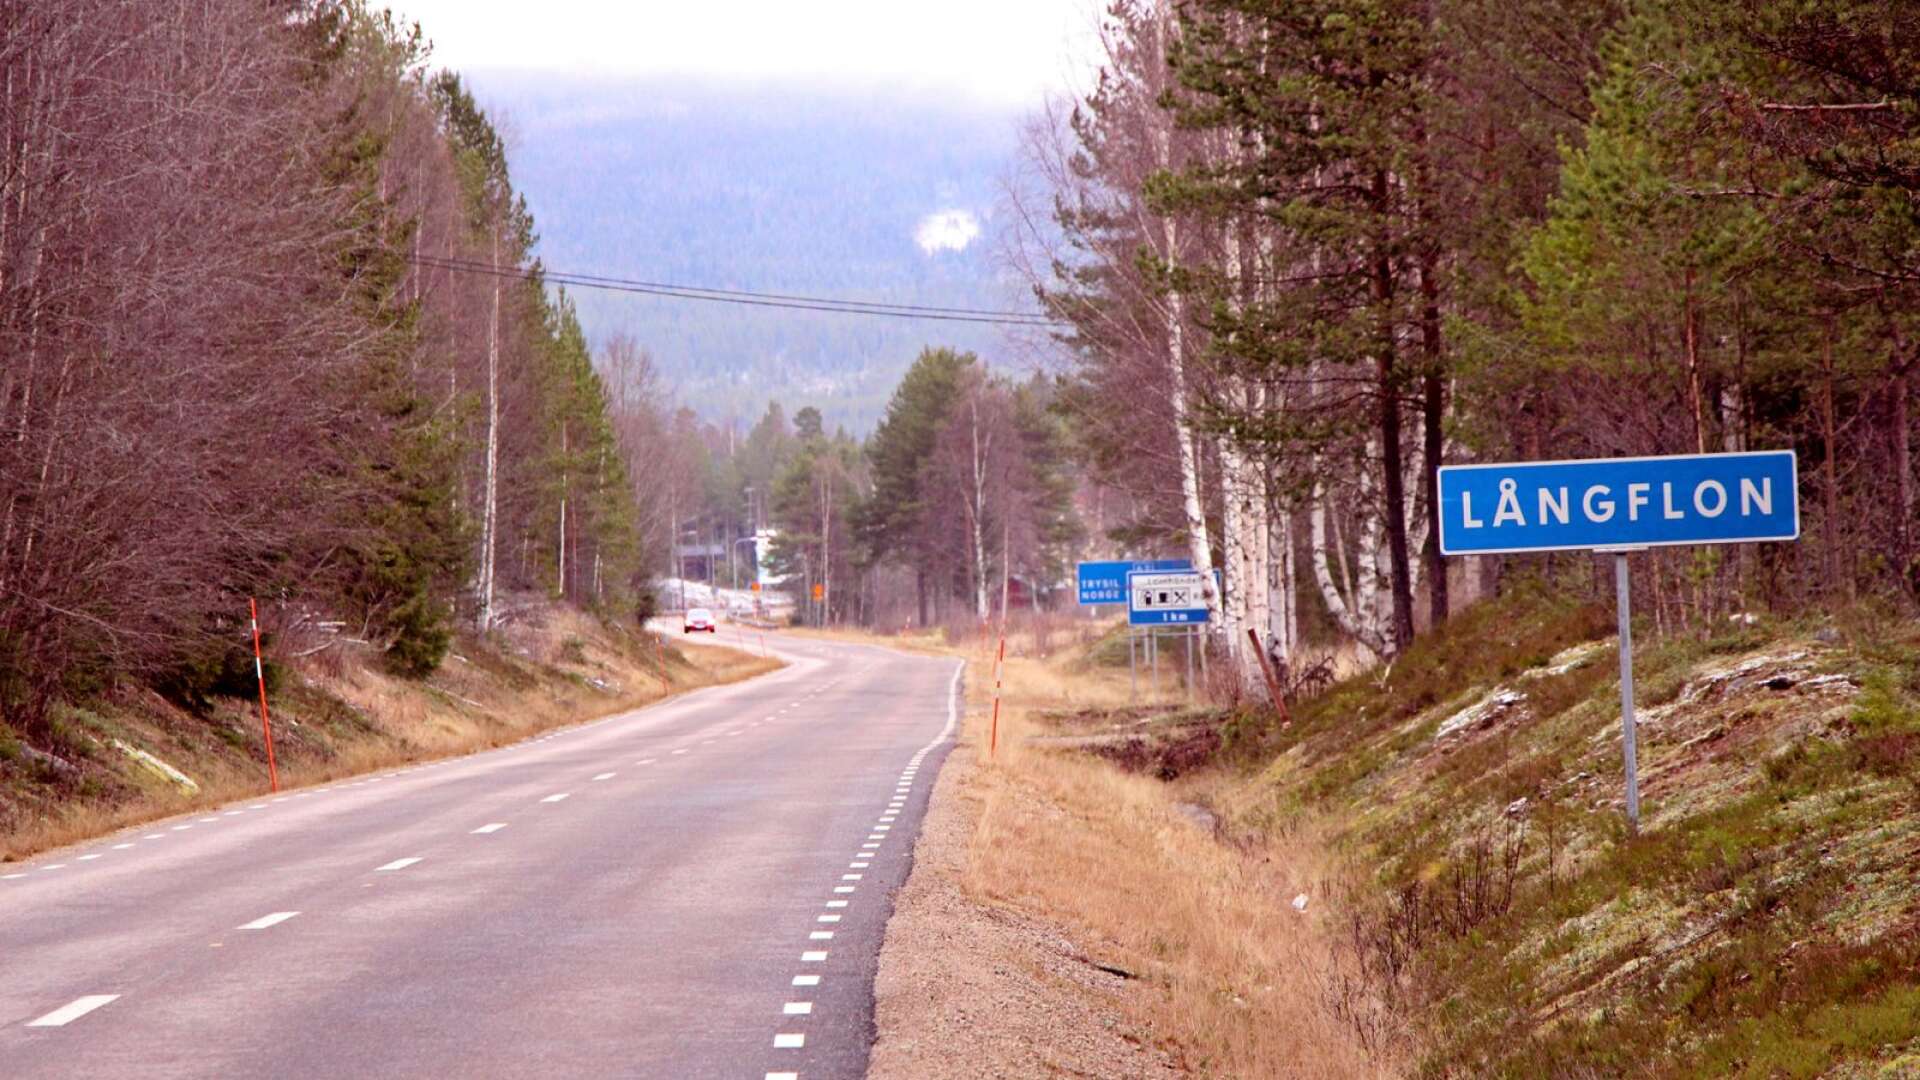 Långflon är Värmlands nordligaste by, precis på gränsen mot Norge, med en handfull invånare.